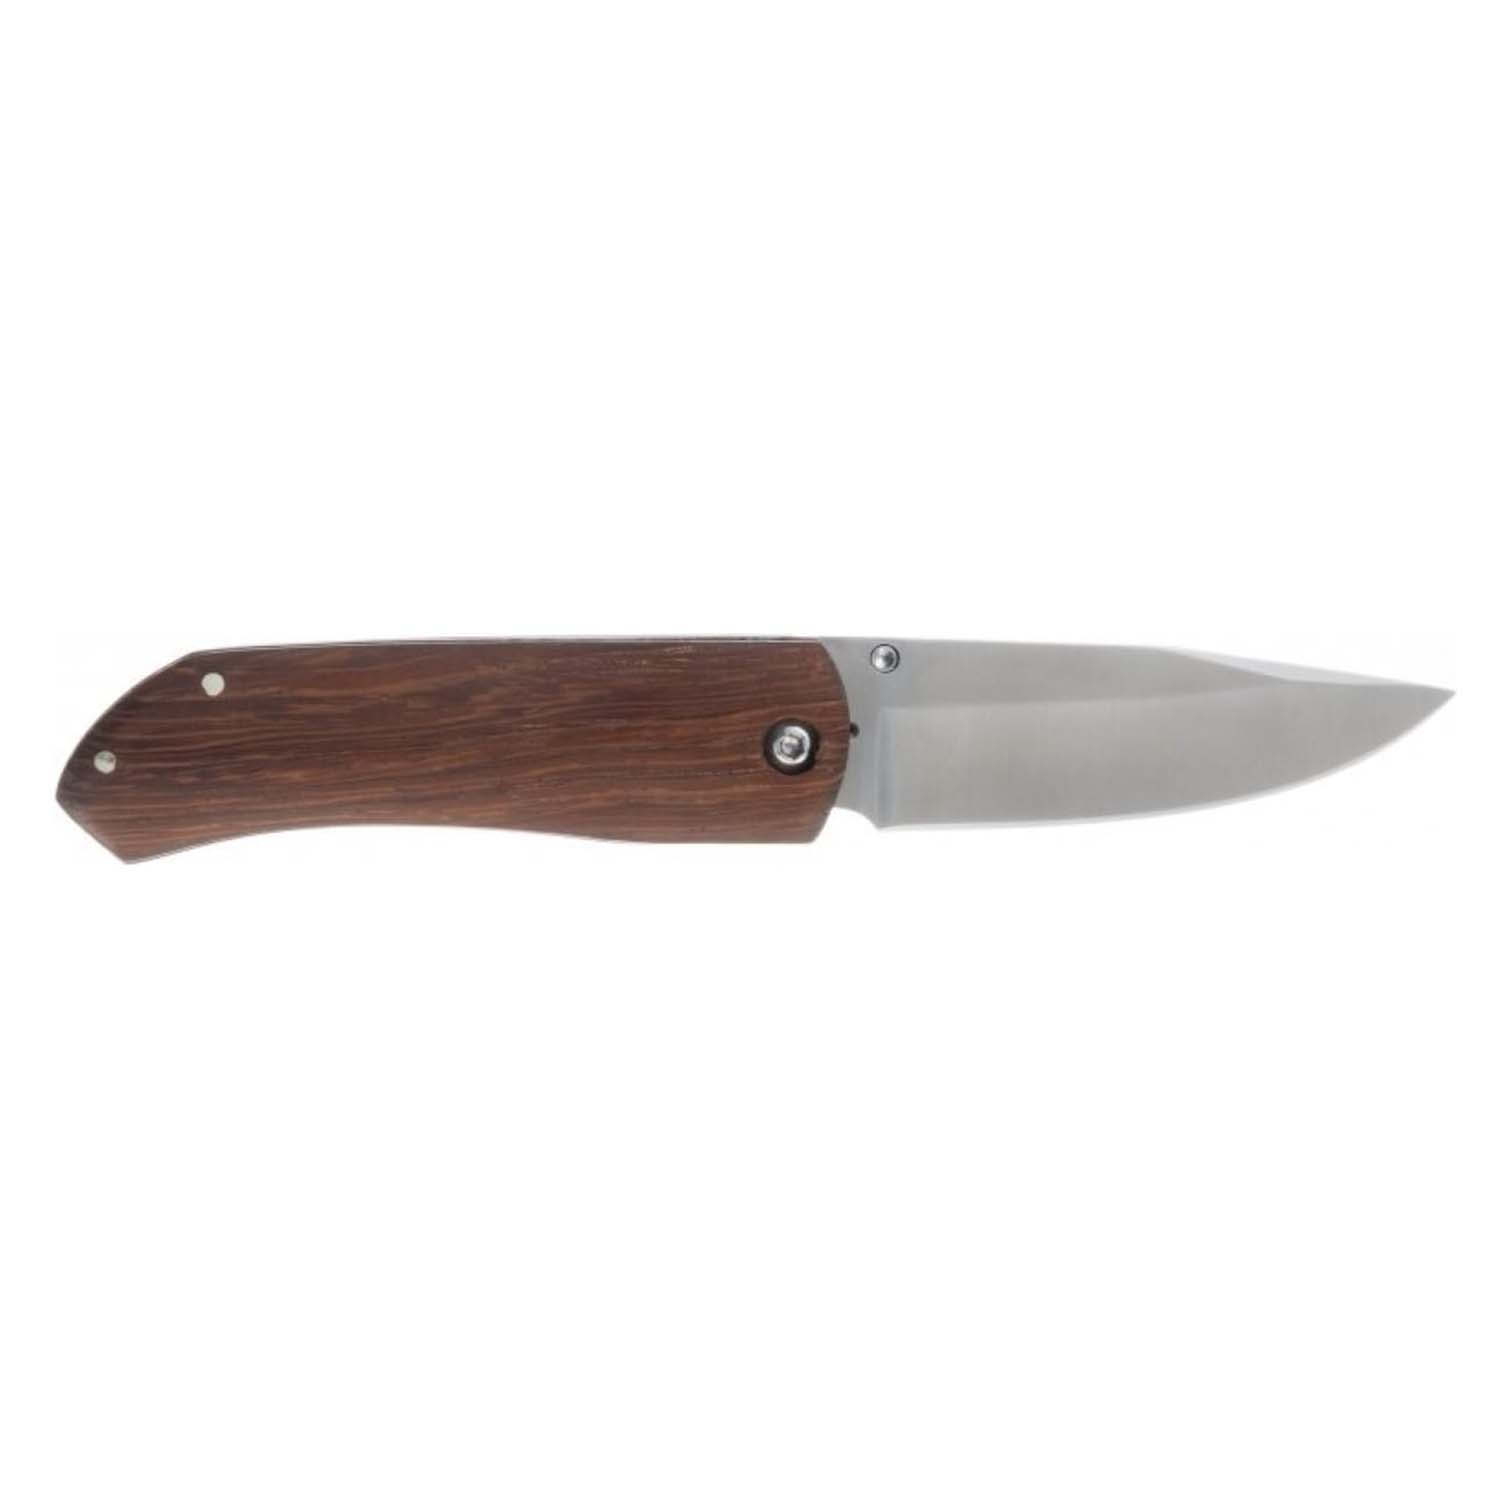 Нож Stinger Knives 77 мм рукоять древесина венге Коричневый